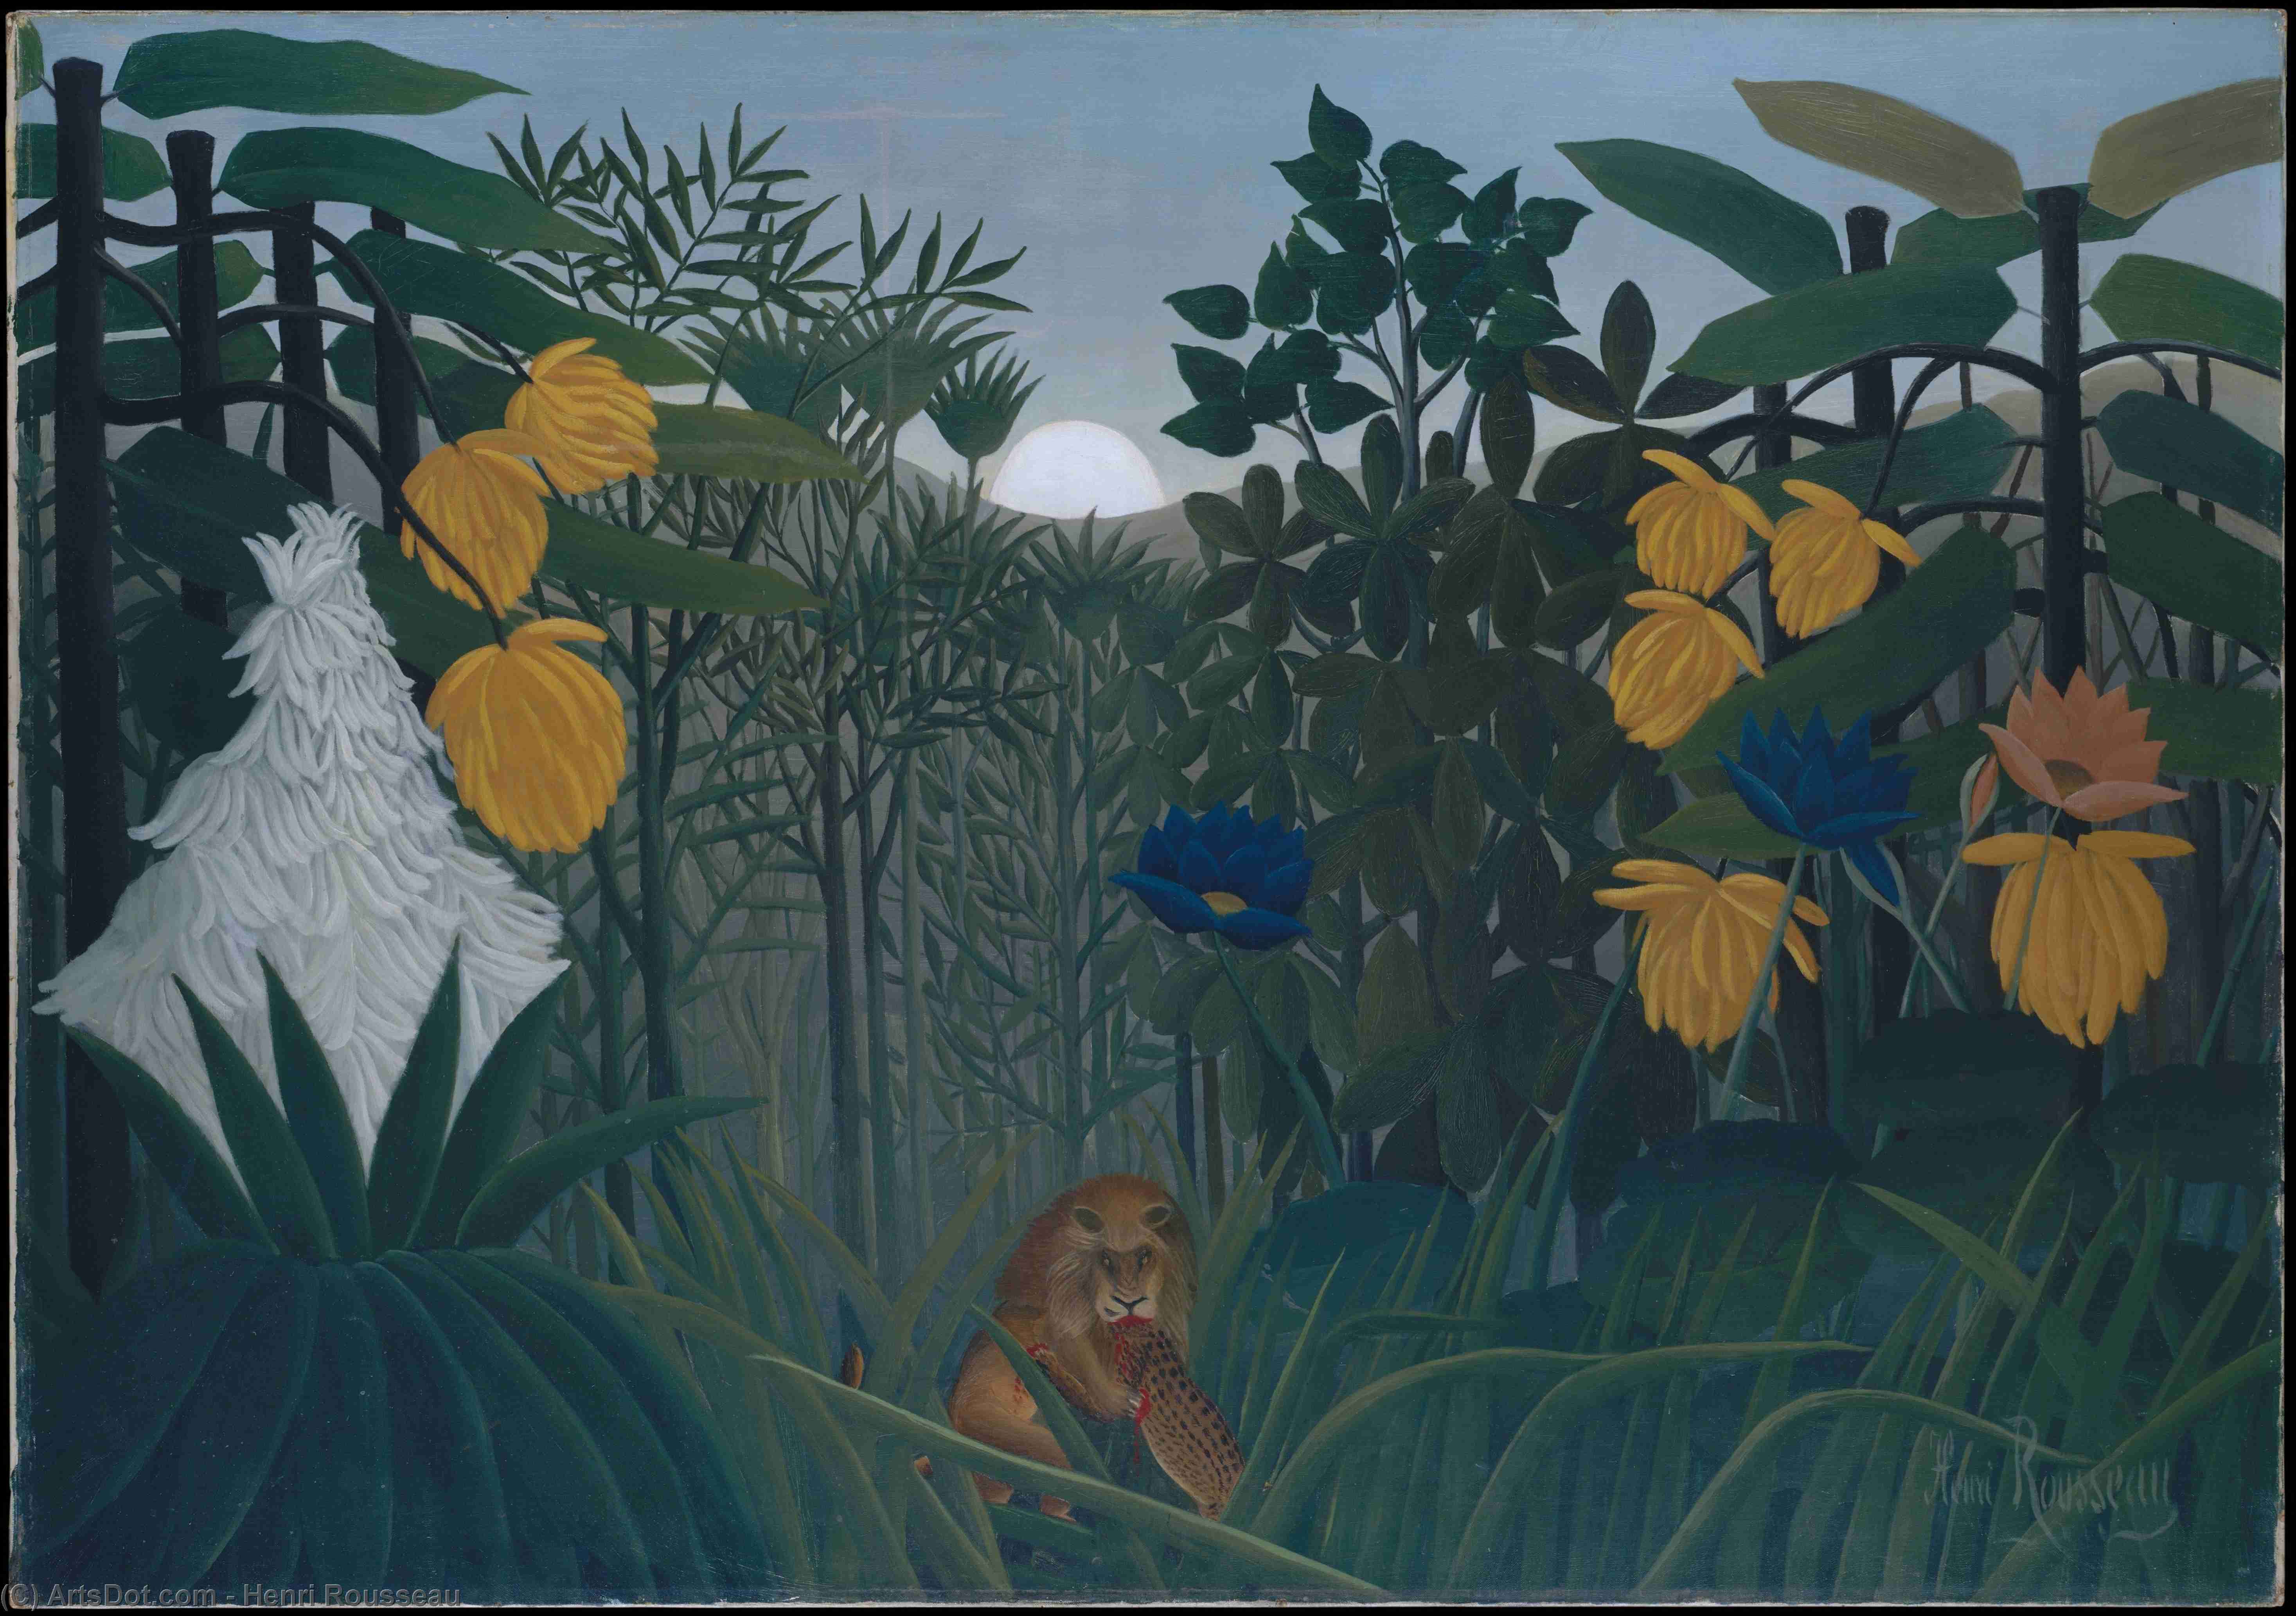 Order Oil Painting Replica The Repast of the Lion, 1907 by Henri Julien Félix Rousseau (Le Douanier) (1844-1910) | ArtsDot.com